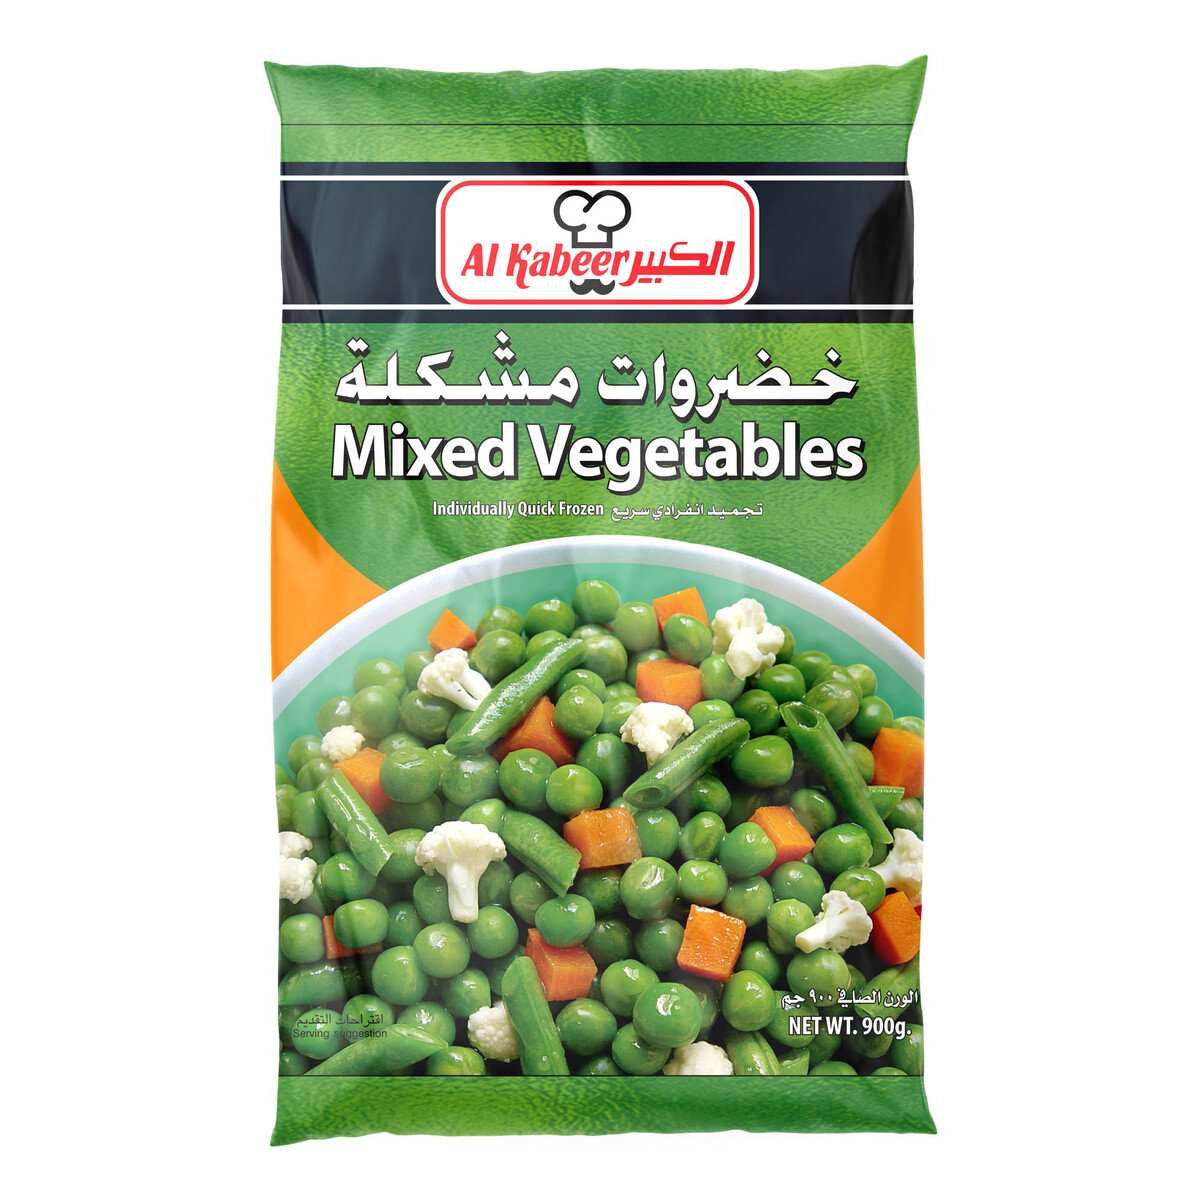 اشتري قم بشراء الكبير خضار مشكلة 900 جم Online at Best Price من الموقع - من لولو هايبر ماركت Mix Vegetable في السعودية